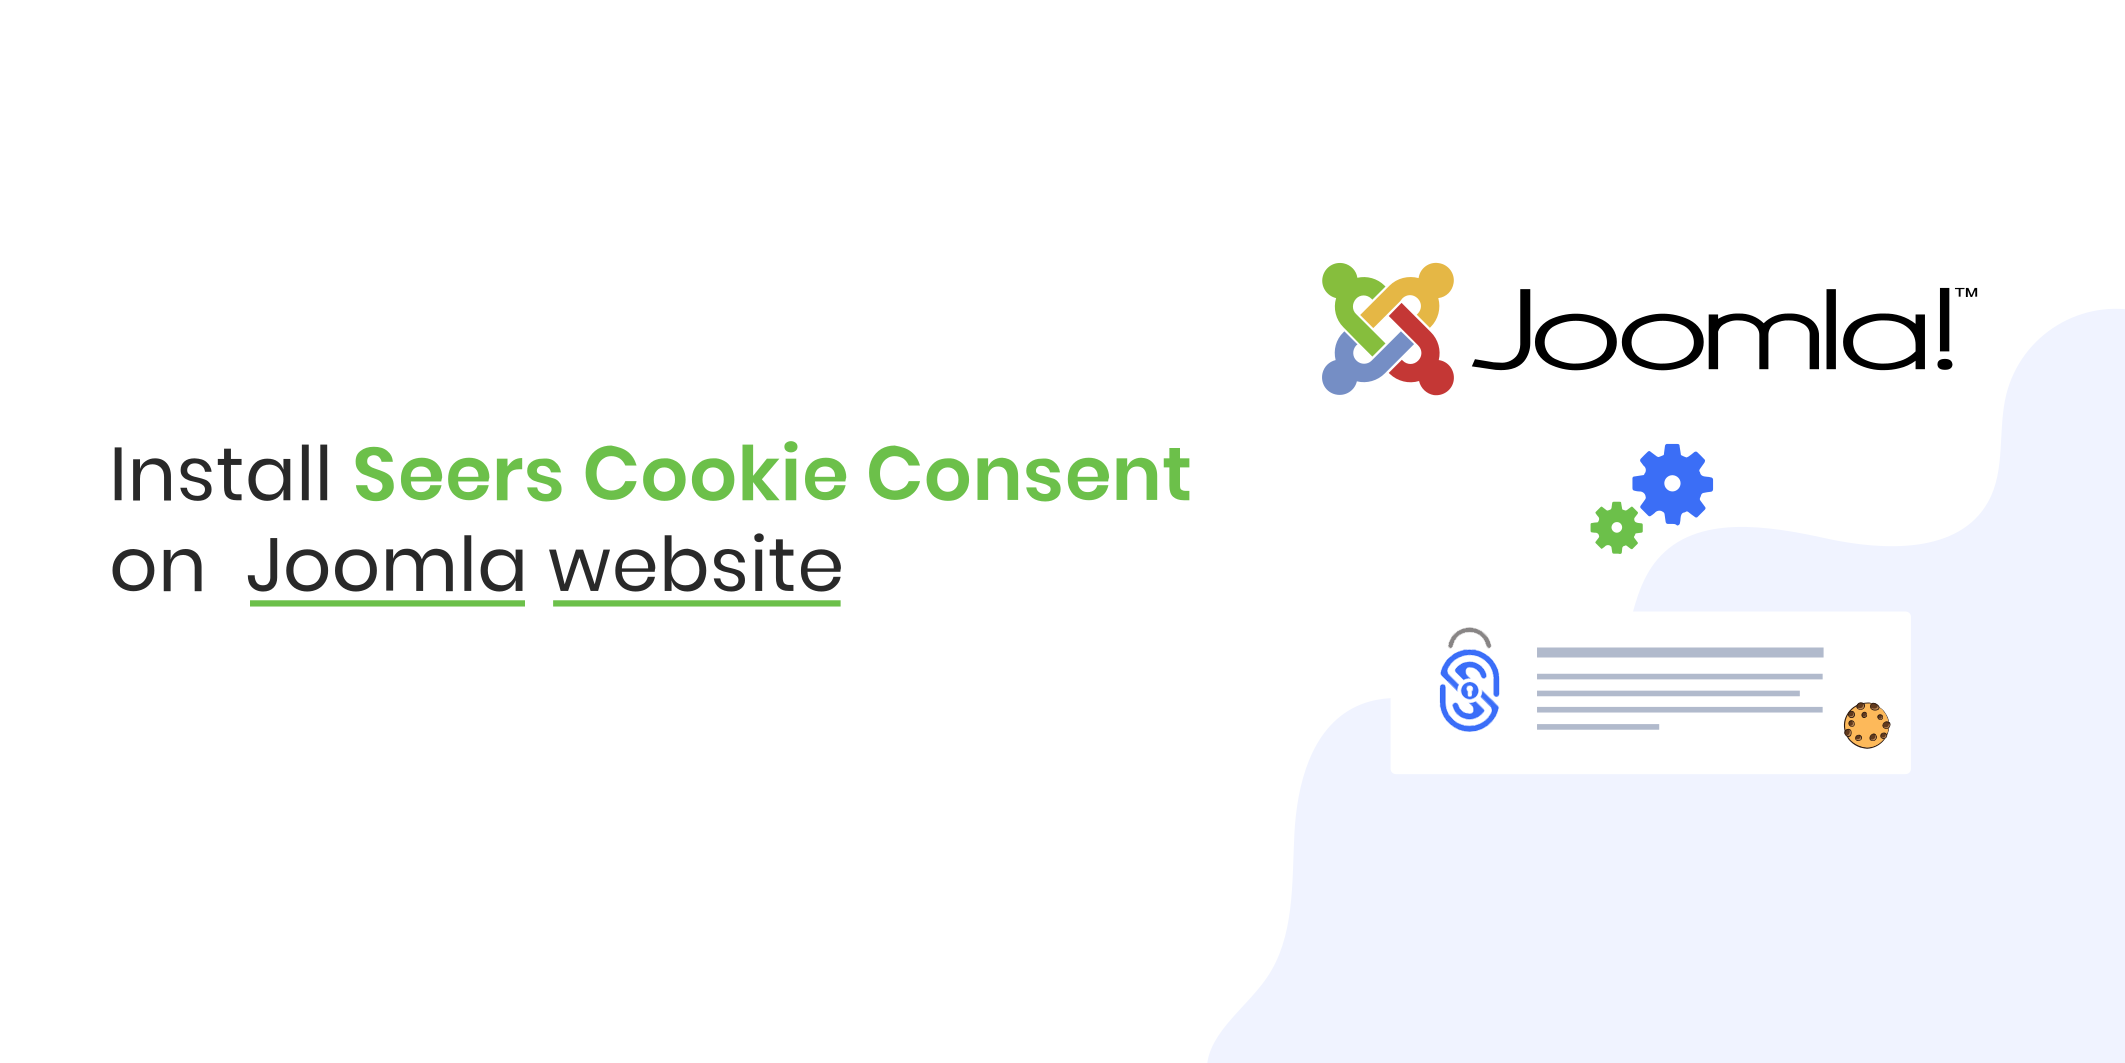 Install Seers Cookie Consent on Joomla Website